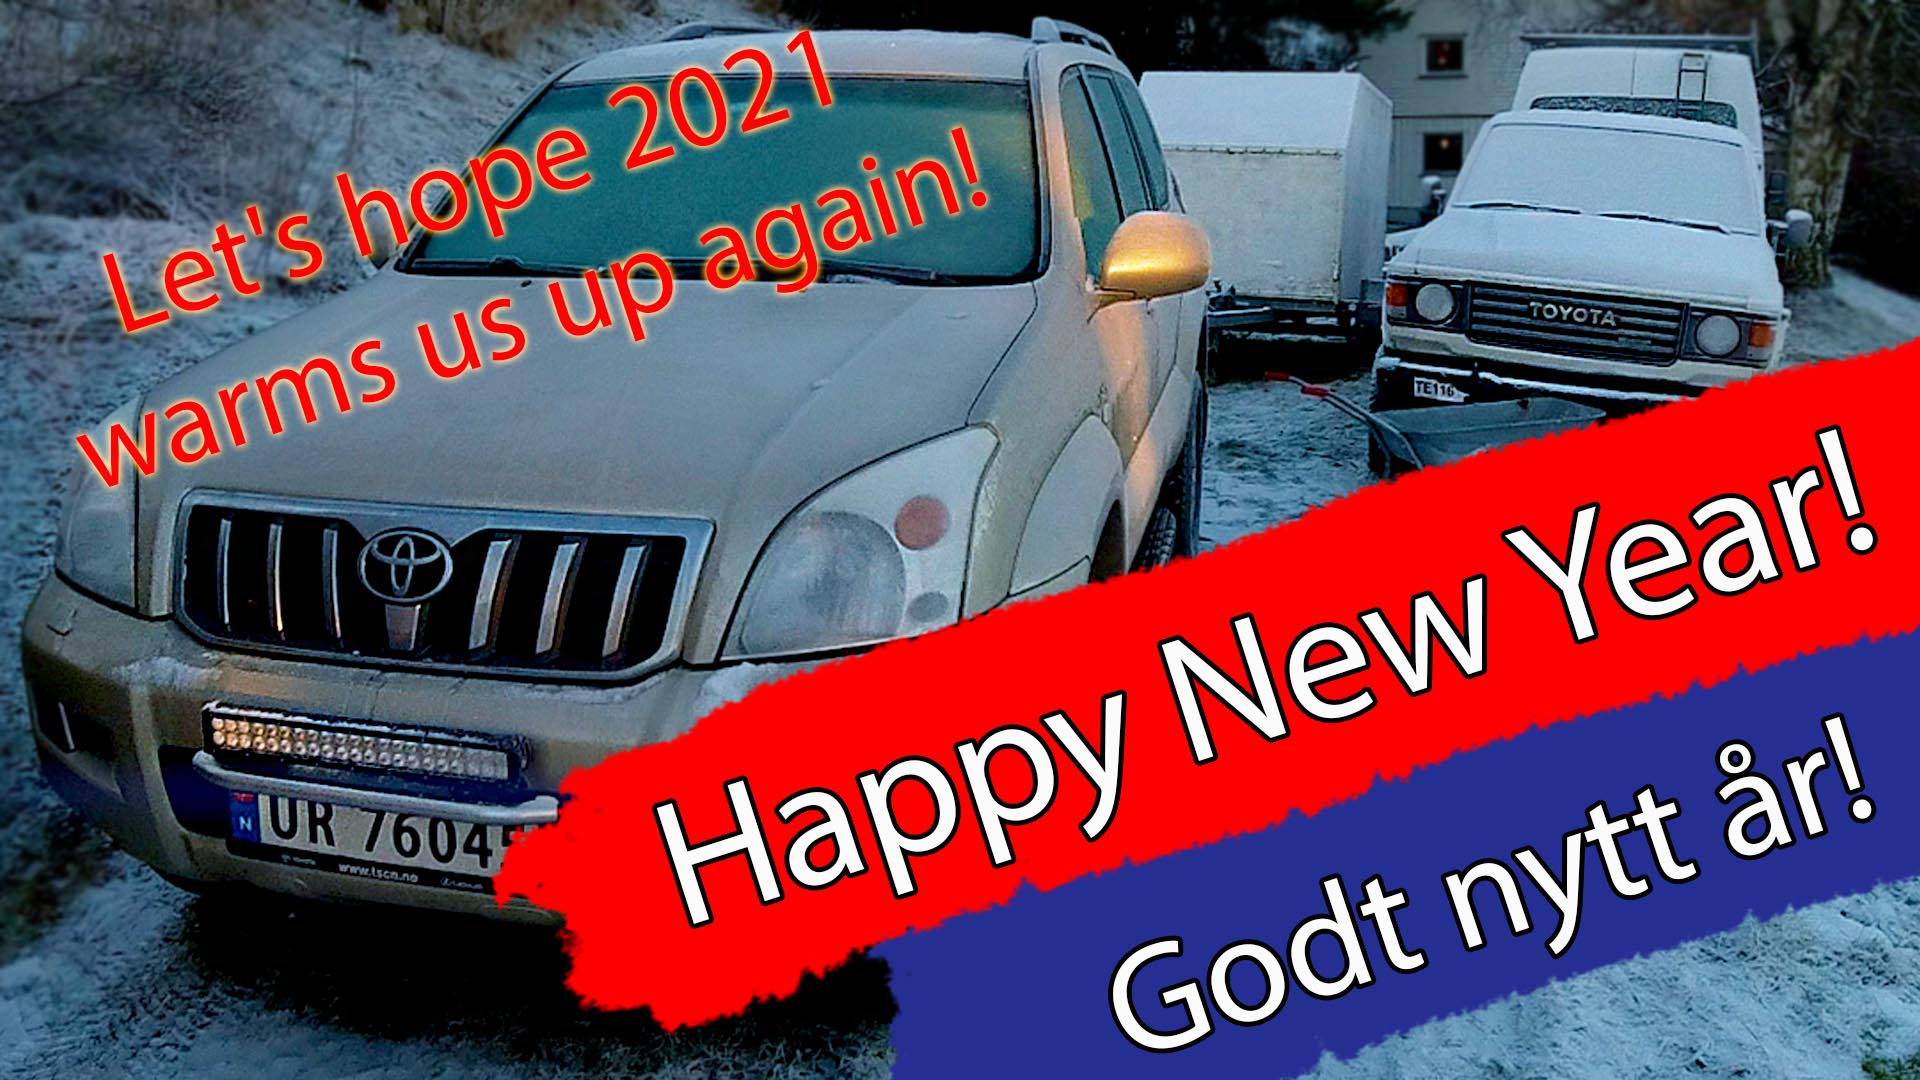 Bildilla Magasin 2021 – Happy New Year! – Godt Nytt år!